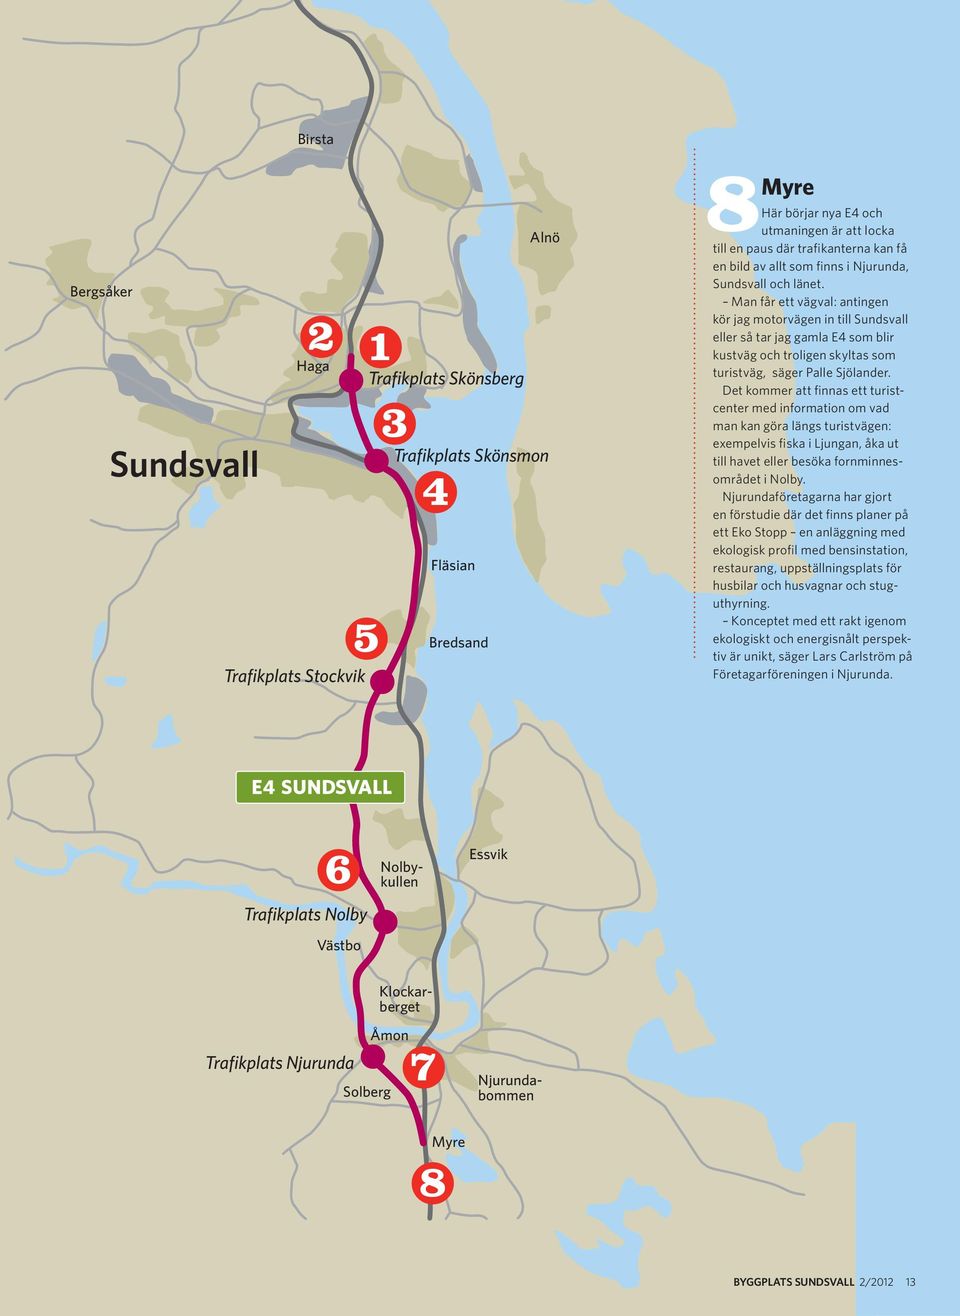 Man får ett vägval: antingen kör jag motorvägen in till Sundsvall eller så tar jag gamla E4 som blir kustväg och troligen skyltas som turistväg, säger Palle Sjölander.